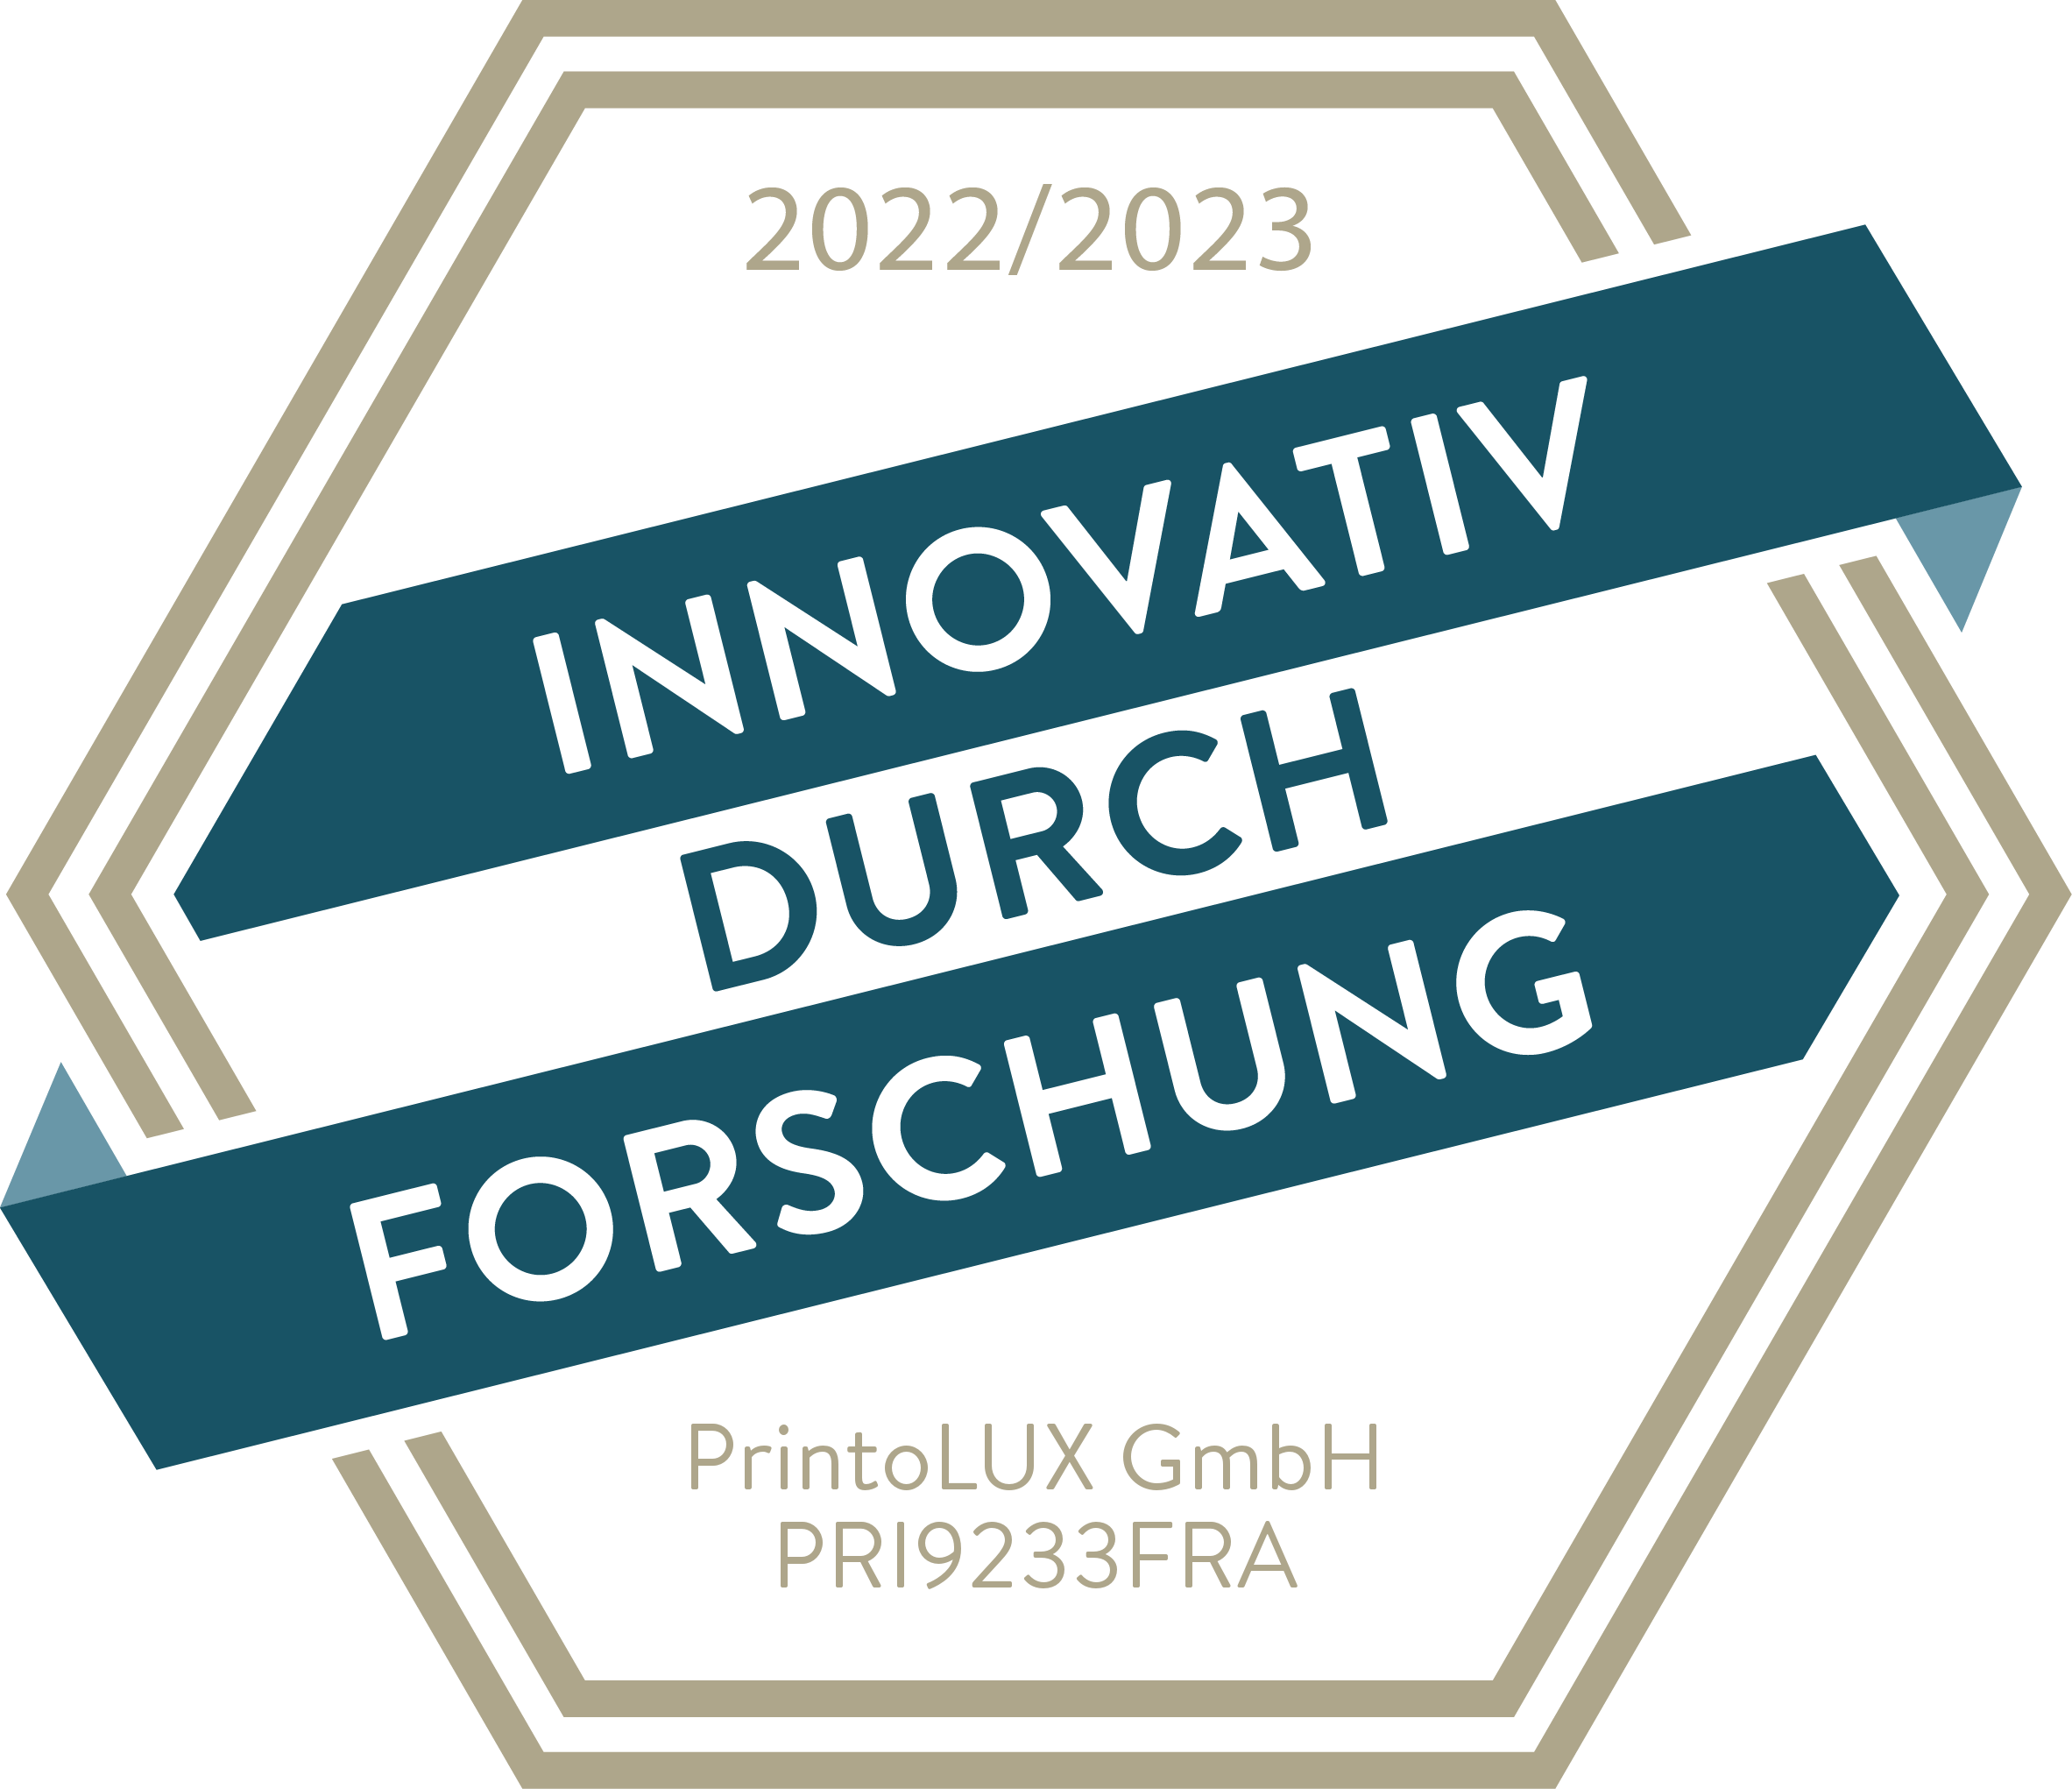 printolux-forschung-und-entwicklung-2022-print-1 (1)